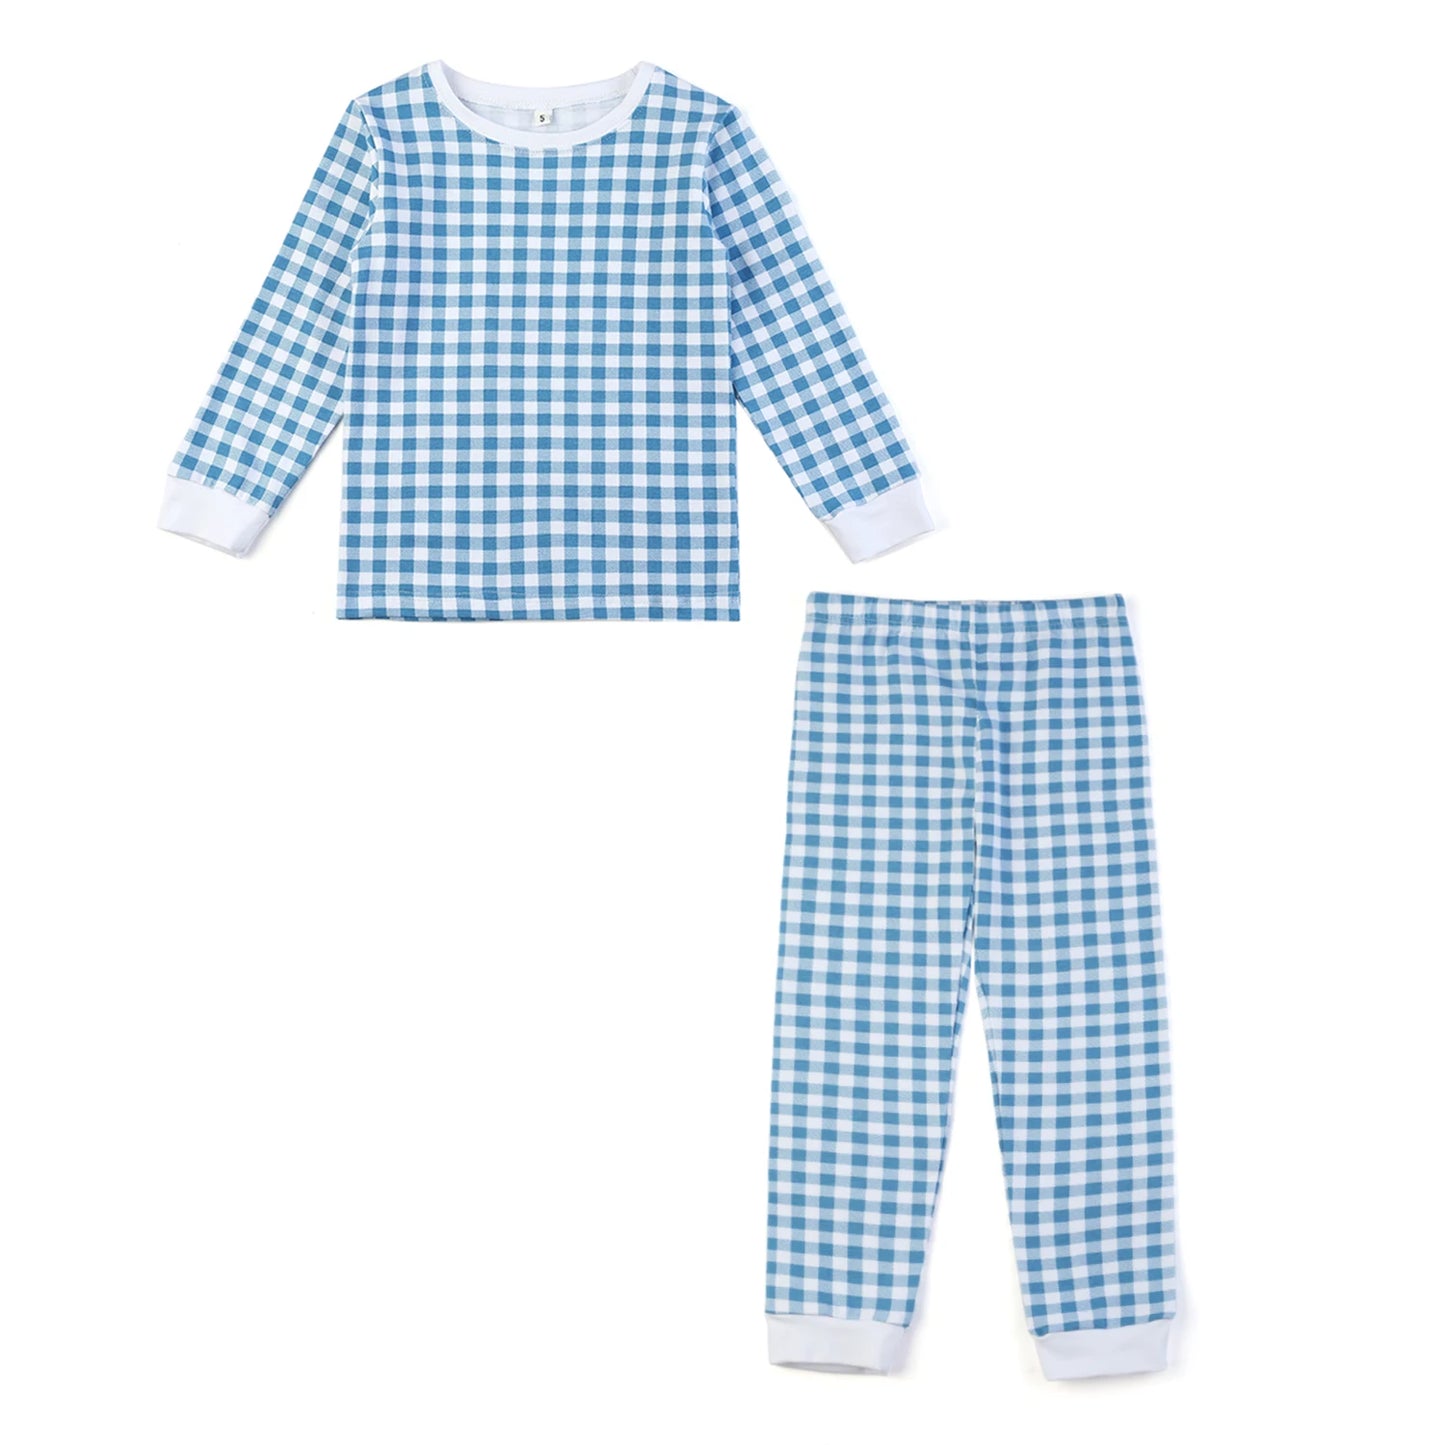 BABY HOUSE -  Seersucker Coton Enfants Fille Pyjamas Ensembles Enfants Vêtements D’intérieur Été  Bébé Fille Vêtements À Manches Courtes Vêtements De Nuit Garçons Pyjamas